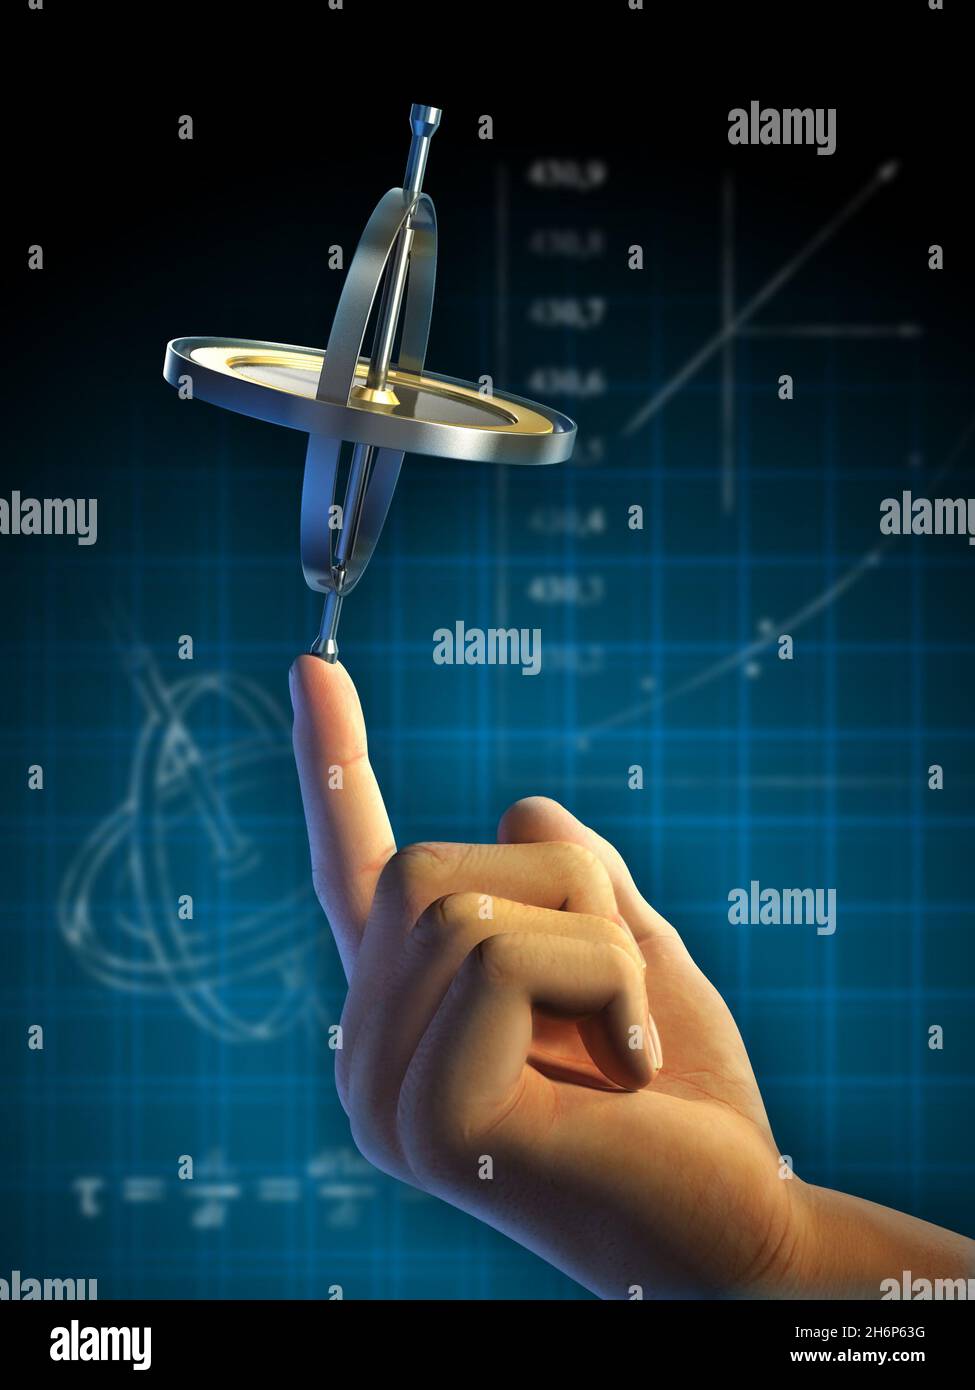 Das Gyroskop steht auf der Fingerspitze im Gleichgewicht. Digitale Abbildung, Clipping Path enthalten, um Hand und Gyroskop vom Hintergrund zu isolieren. Stockfoto